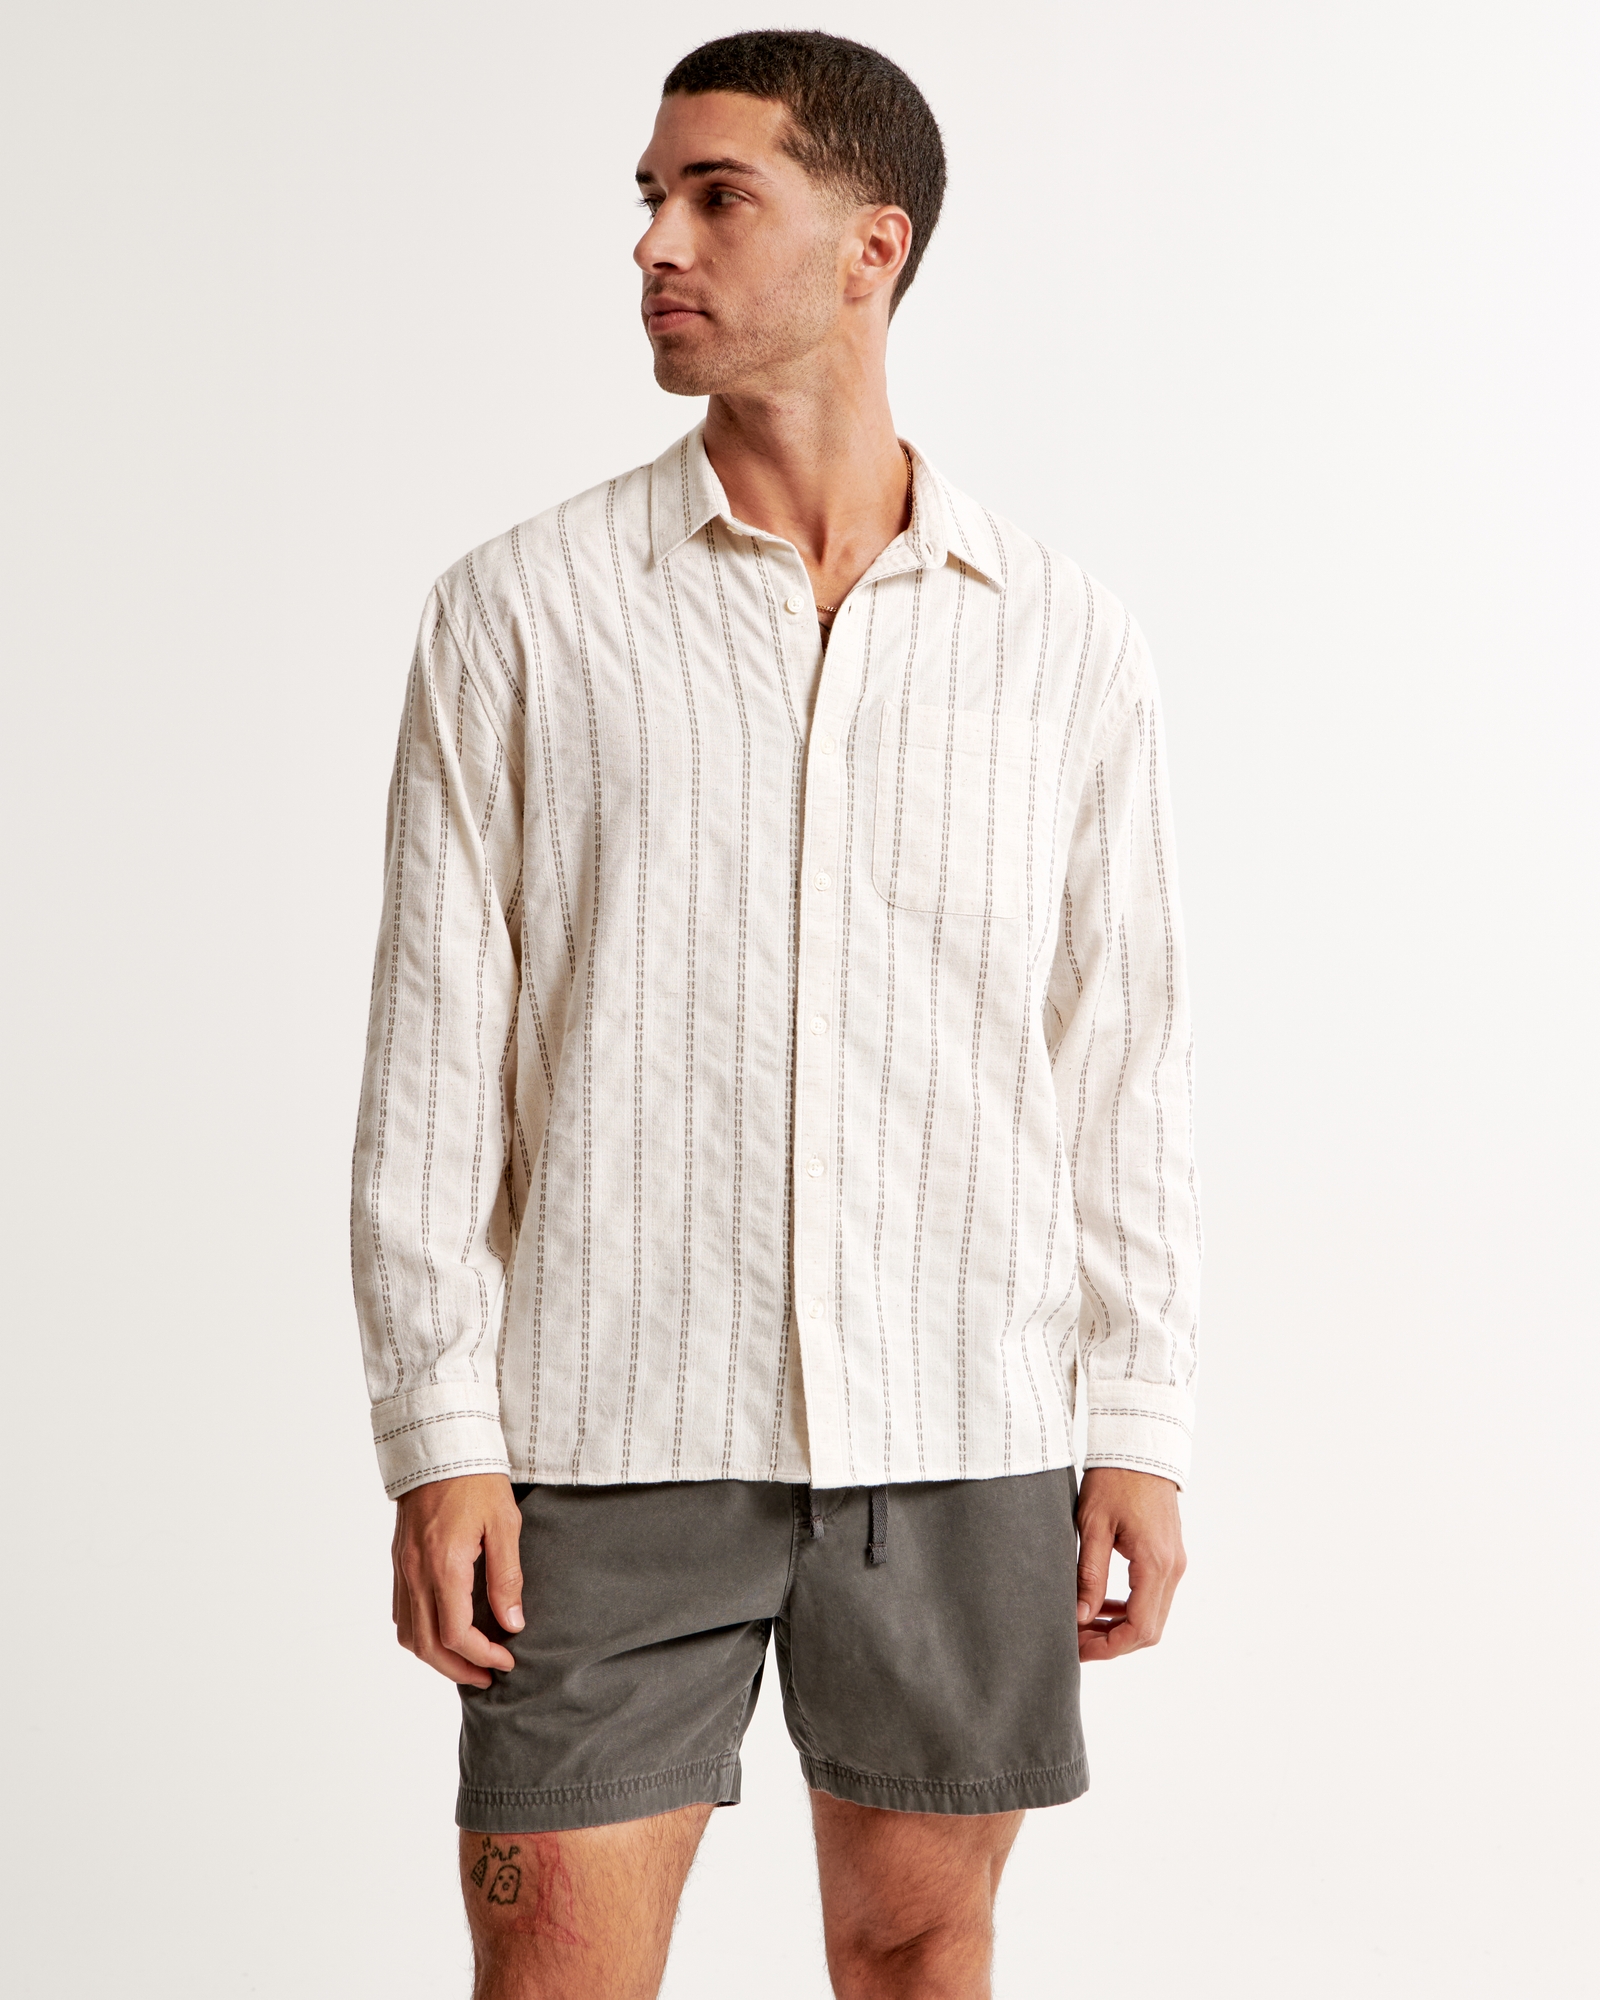 Aueoeo Men's Long Sleeve Button Up Shirt Striped Cotton Linen Shirt Casual  Regular Fit Shirt Blouse 